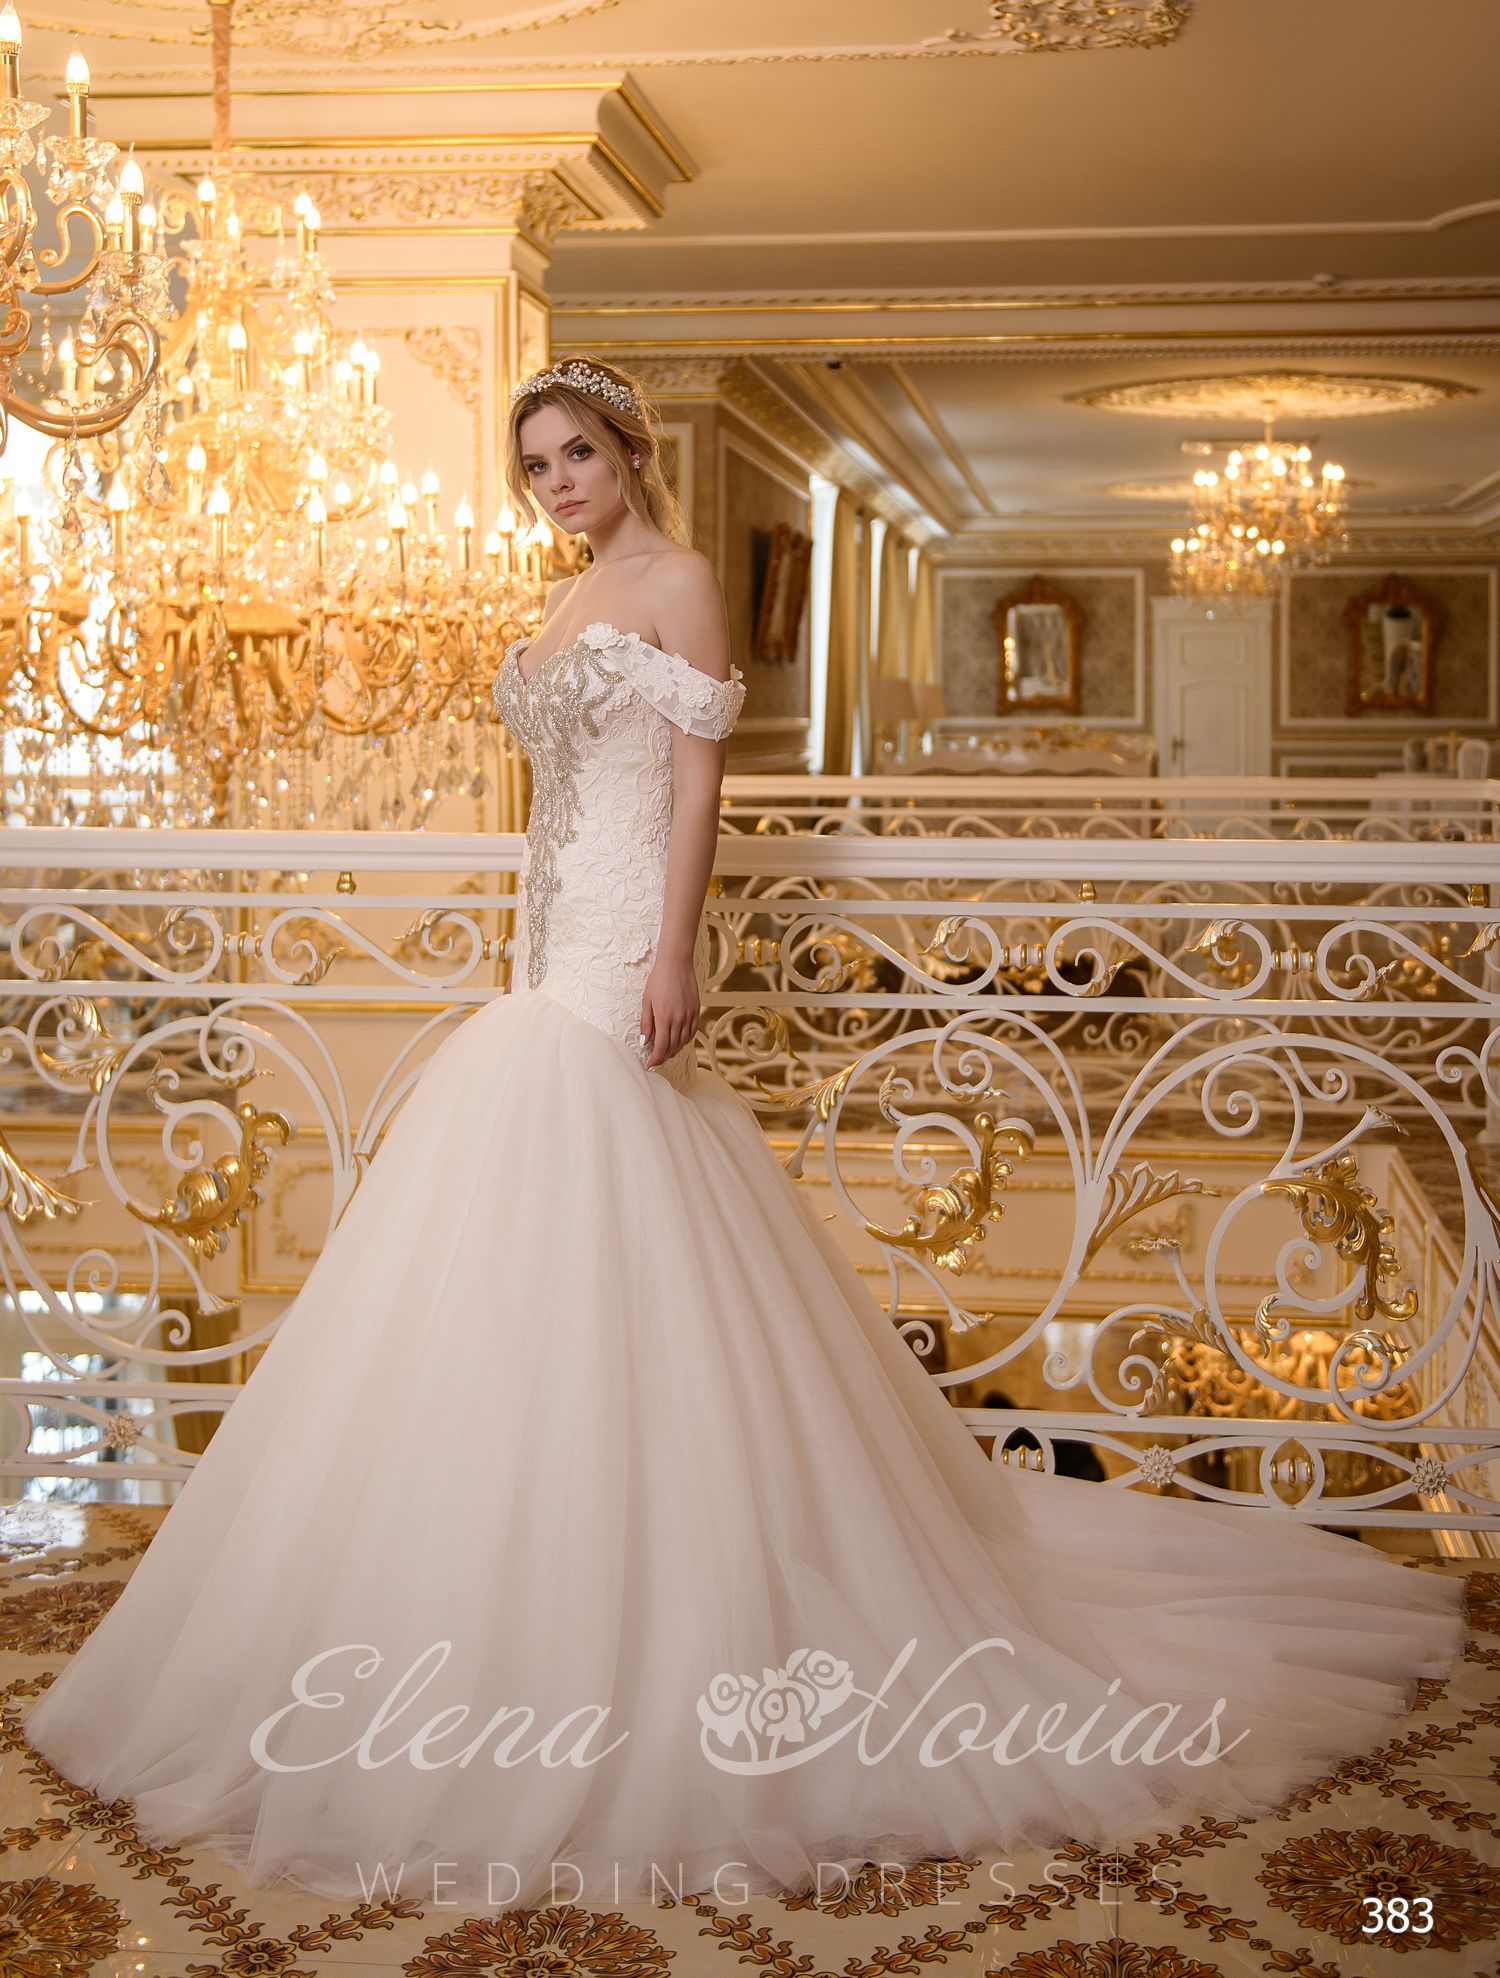 Elegant wedding dress Godet from Elenanovias